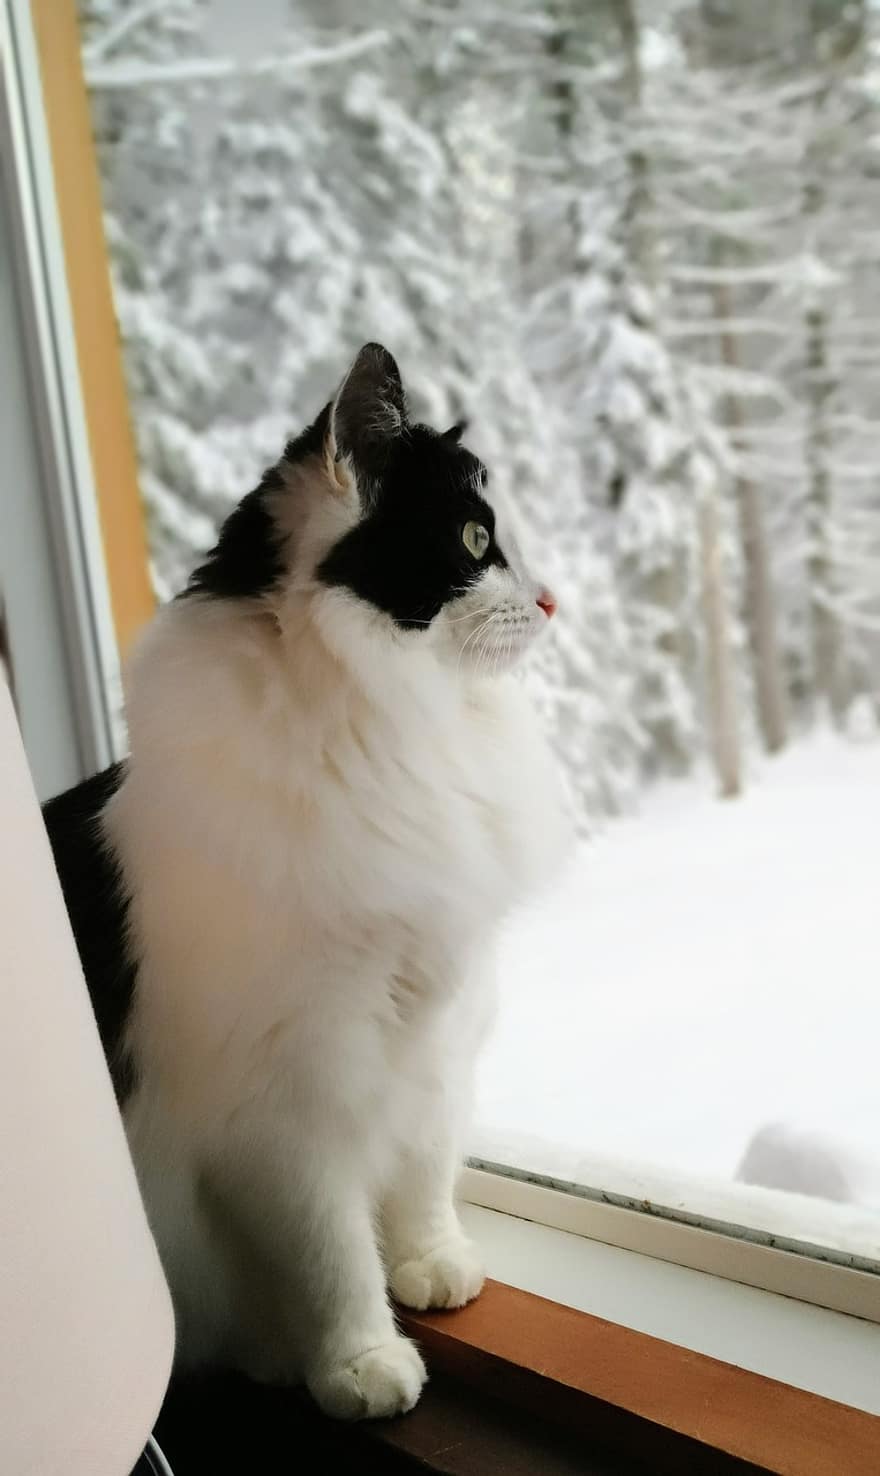 con mèo, vật nuôi, thú vật, cửa sổ, trong nước, có lông, dễ thương, mèo nhà, đang nhìn, lông thú, tuyết